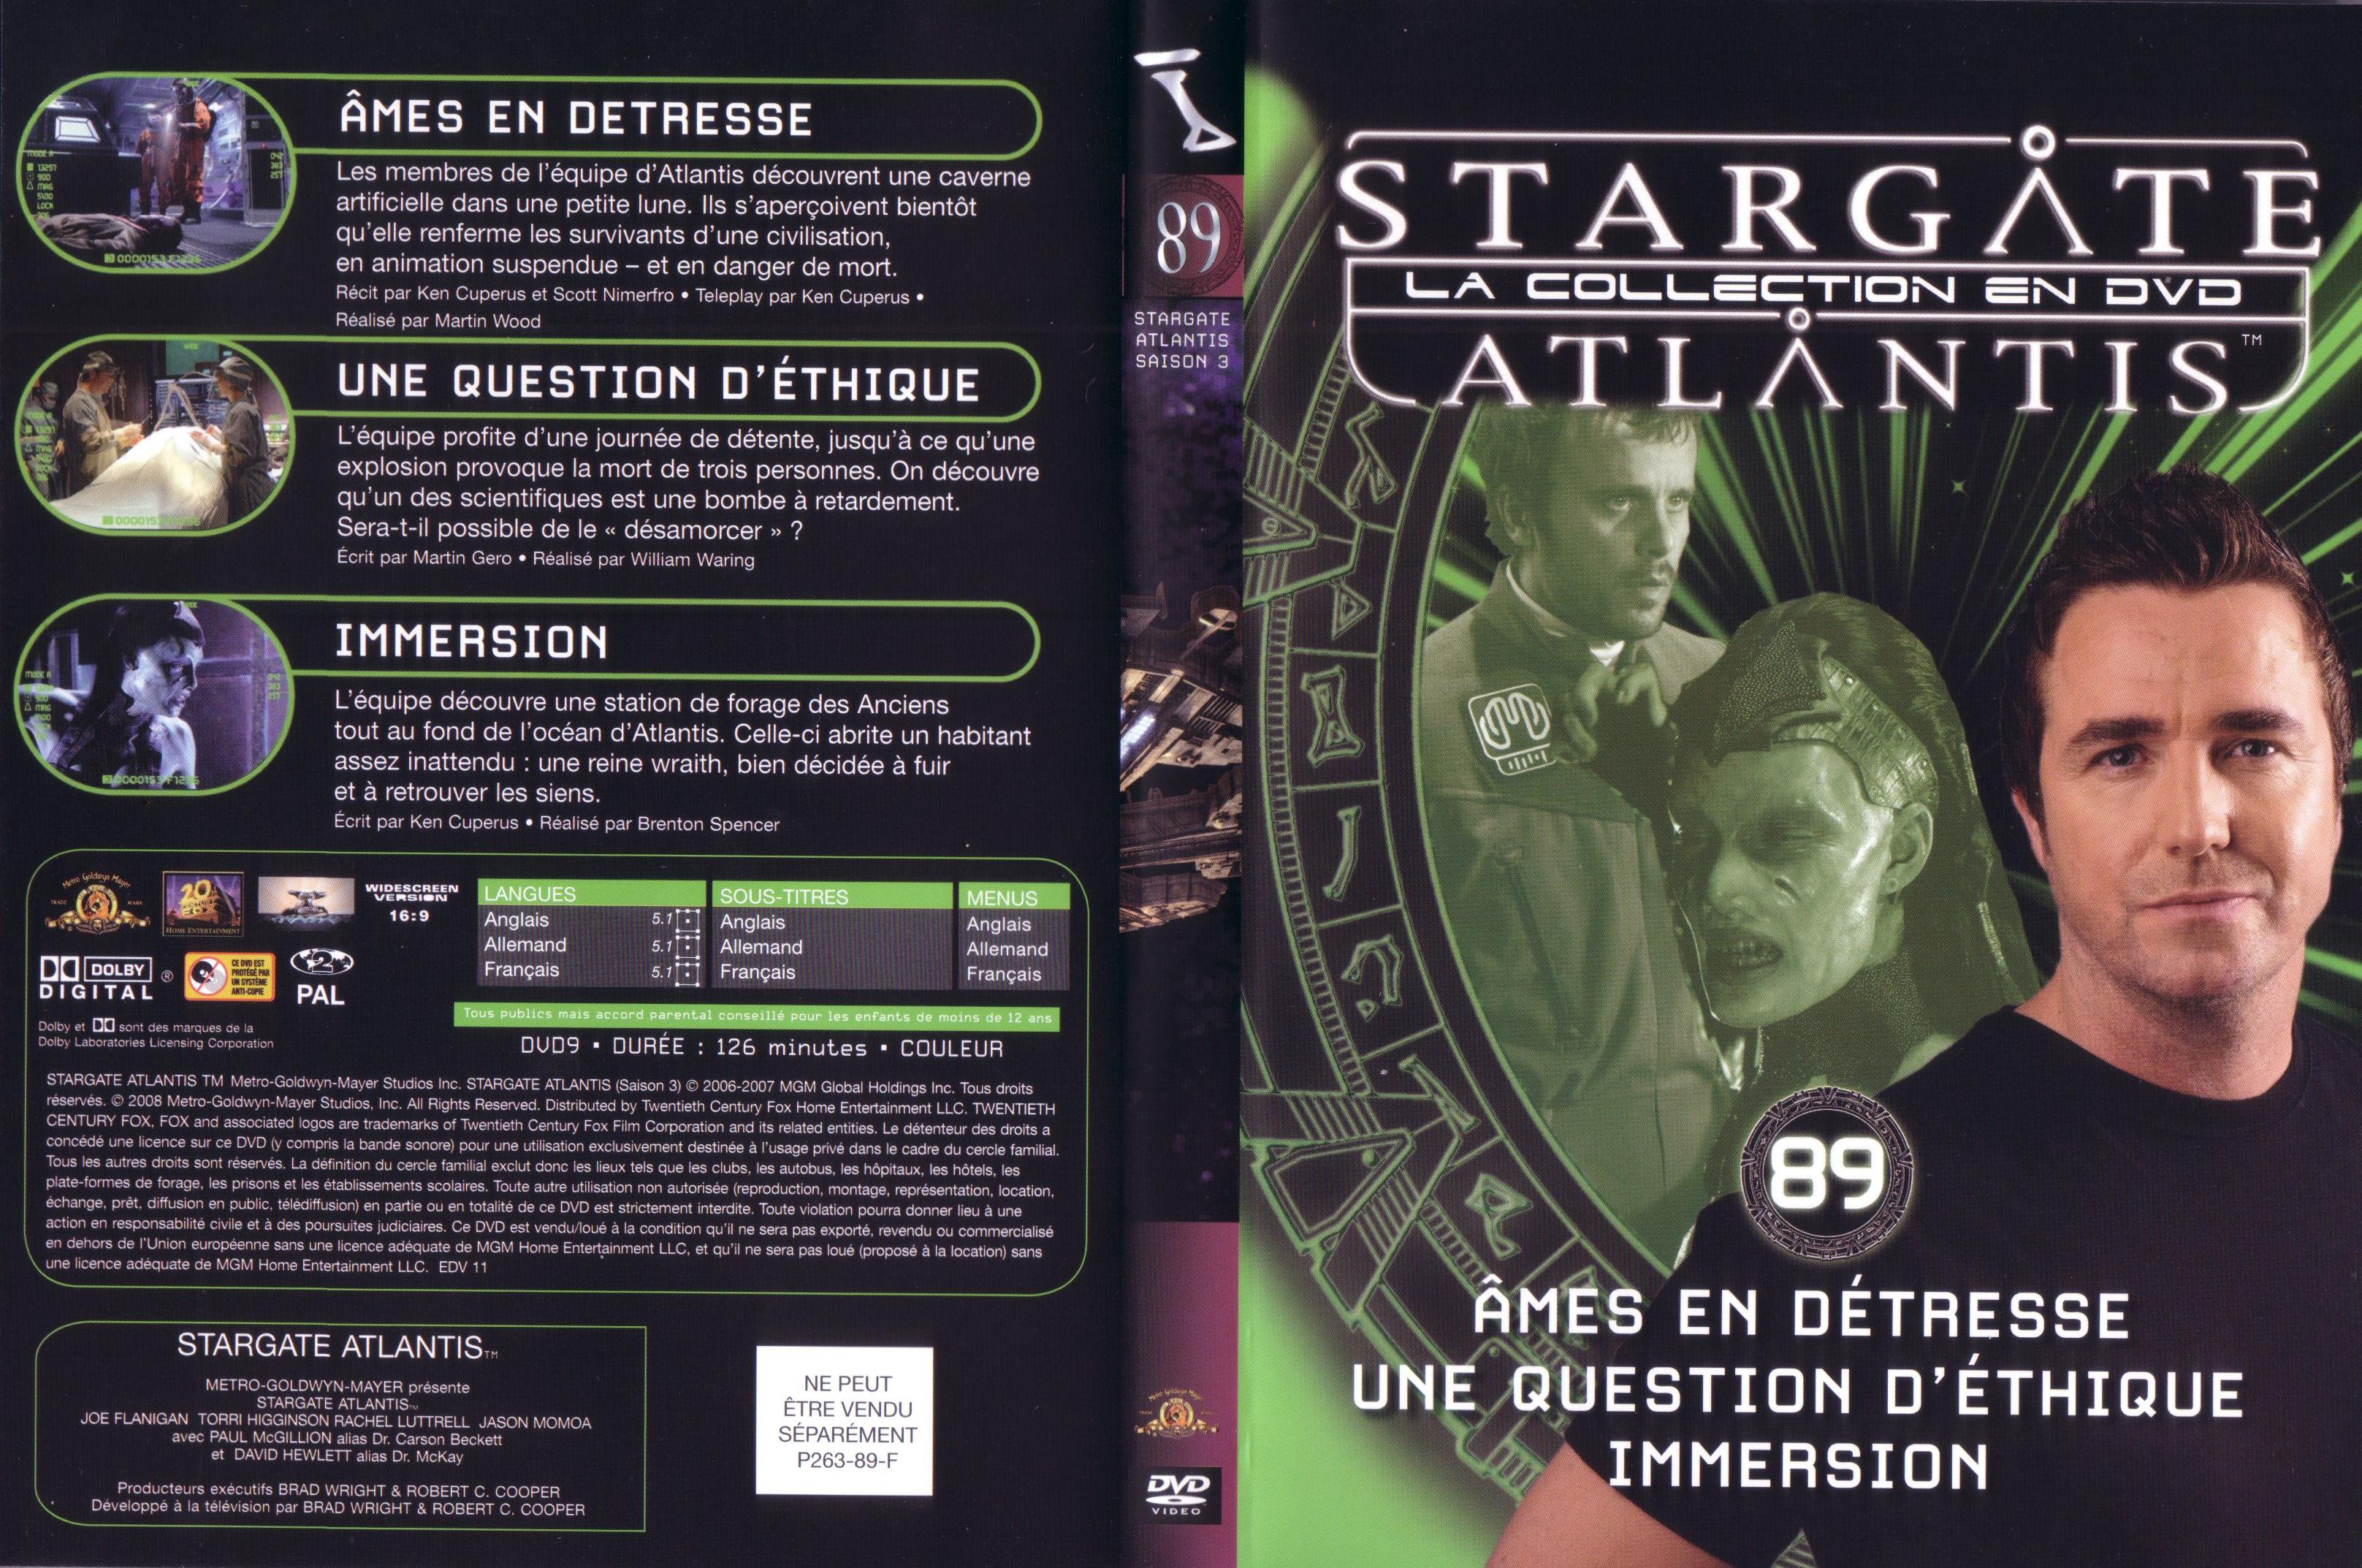 Jaquette DVD Stargate atlantis saison 3 vol 89